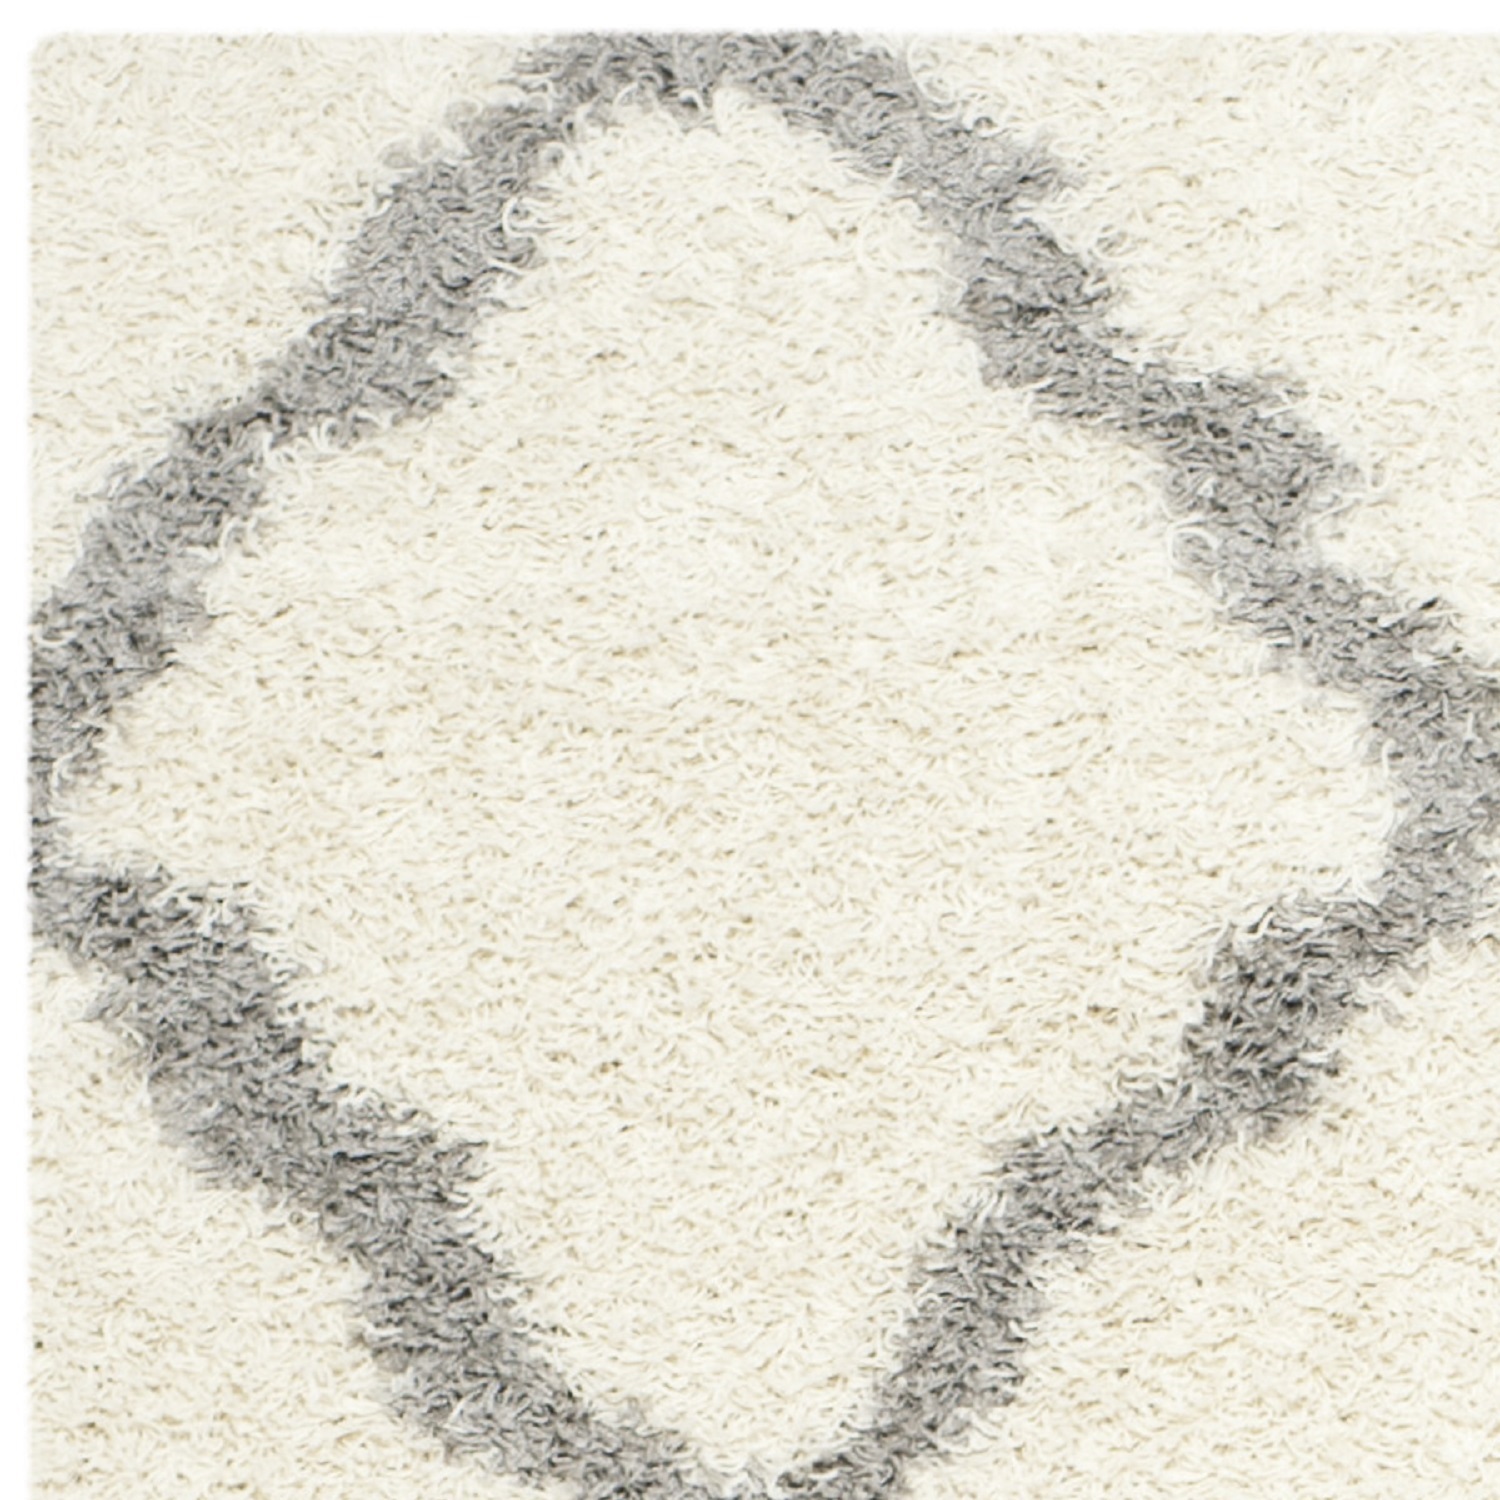 SAFAVIEH Daley Geometric Plush Shag Area Rug, Ivory/Grey, 10' x 14' - image 4 of 8